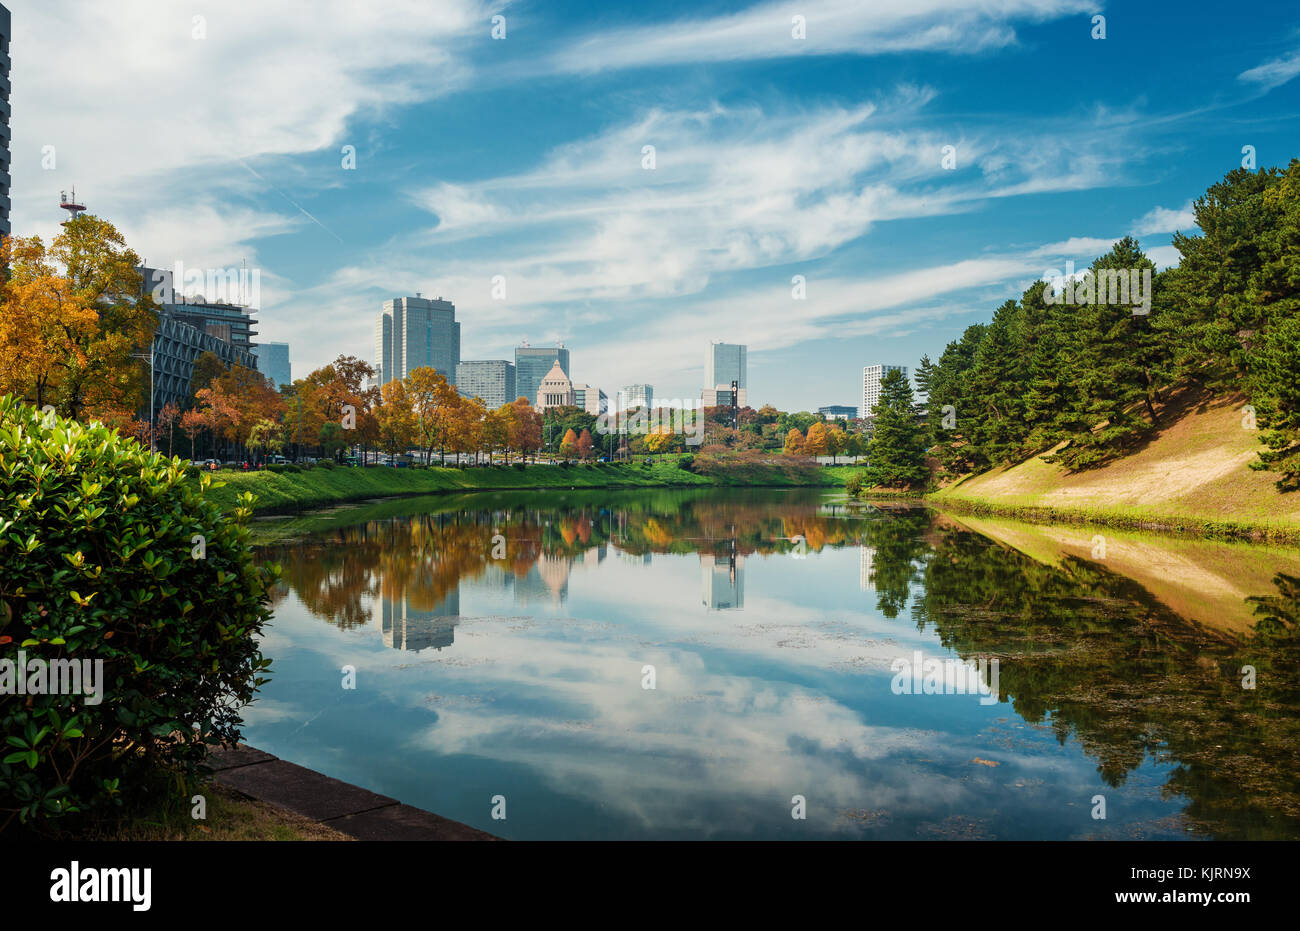 Vista della tokyo city center dall'imperial Palace giardini pubblici antico fossato in autunno Foto Stock